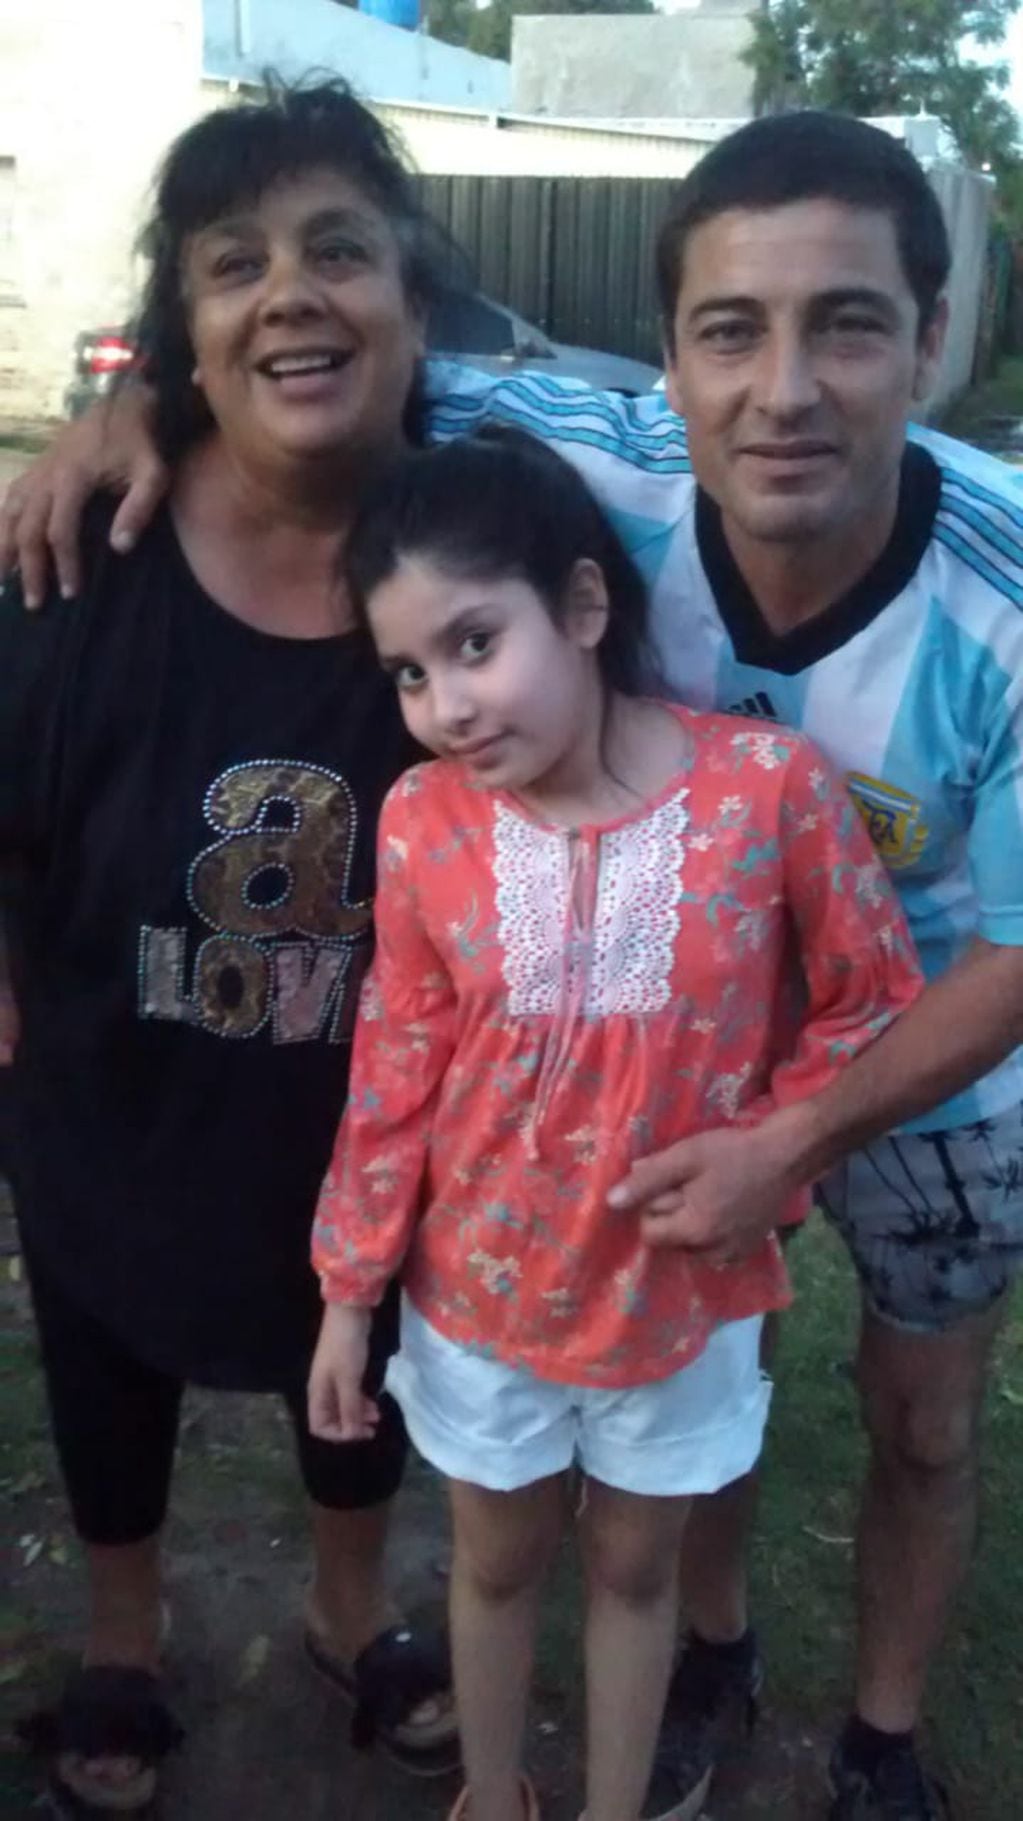 La pequeña Catalina junto a su papá Diego y su amiga Sonia.